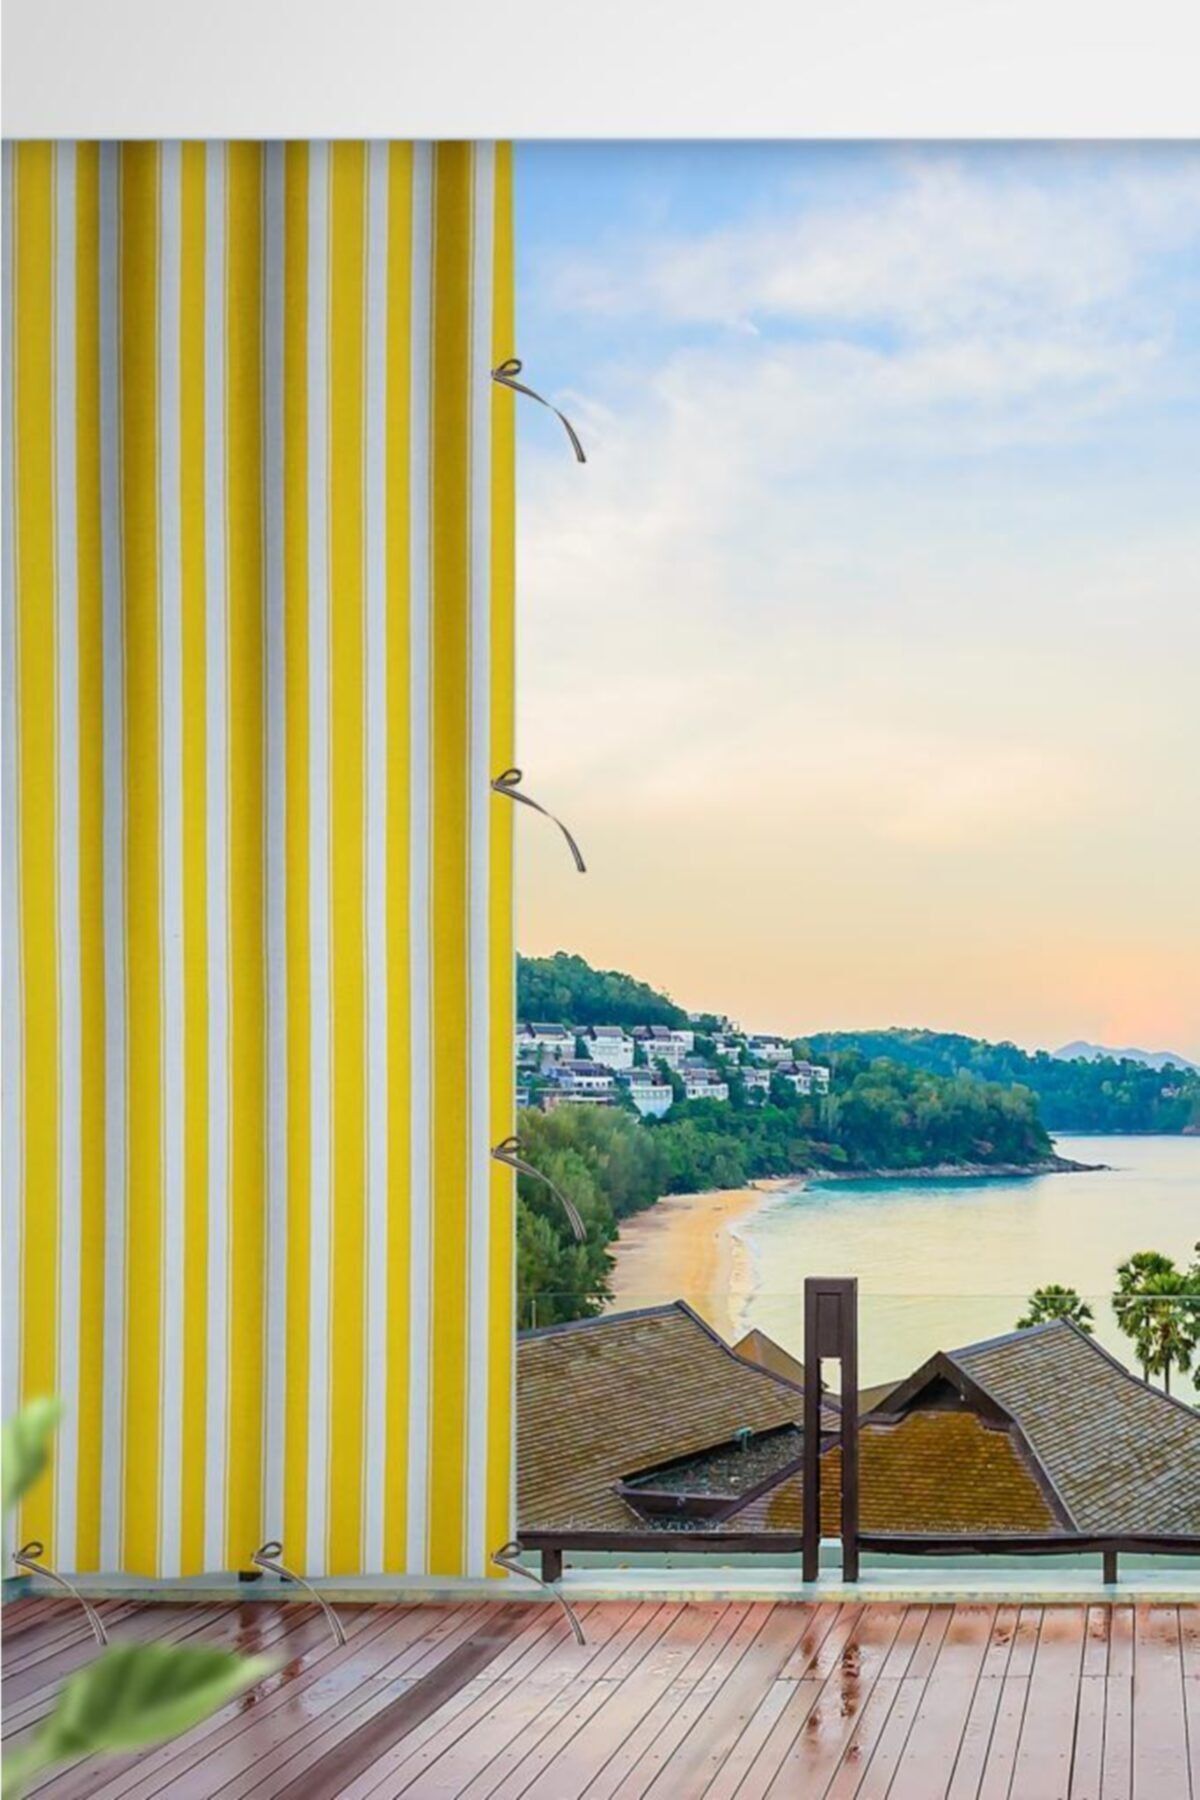 ALTINPAMUK Her Ölçüde Enxboy Seçenekli Bağcıklı Balkon Perdesi Balkon Brandası Sarı Beyaz